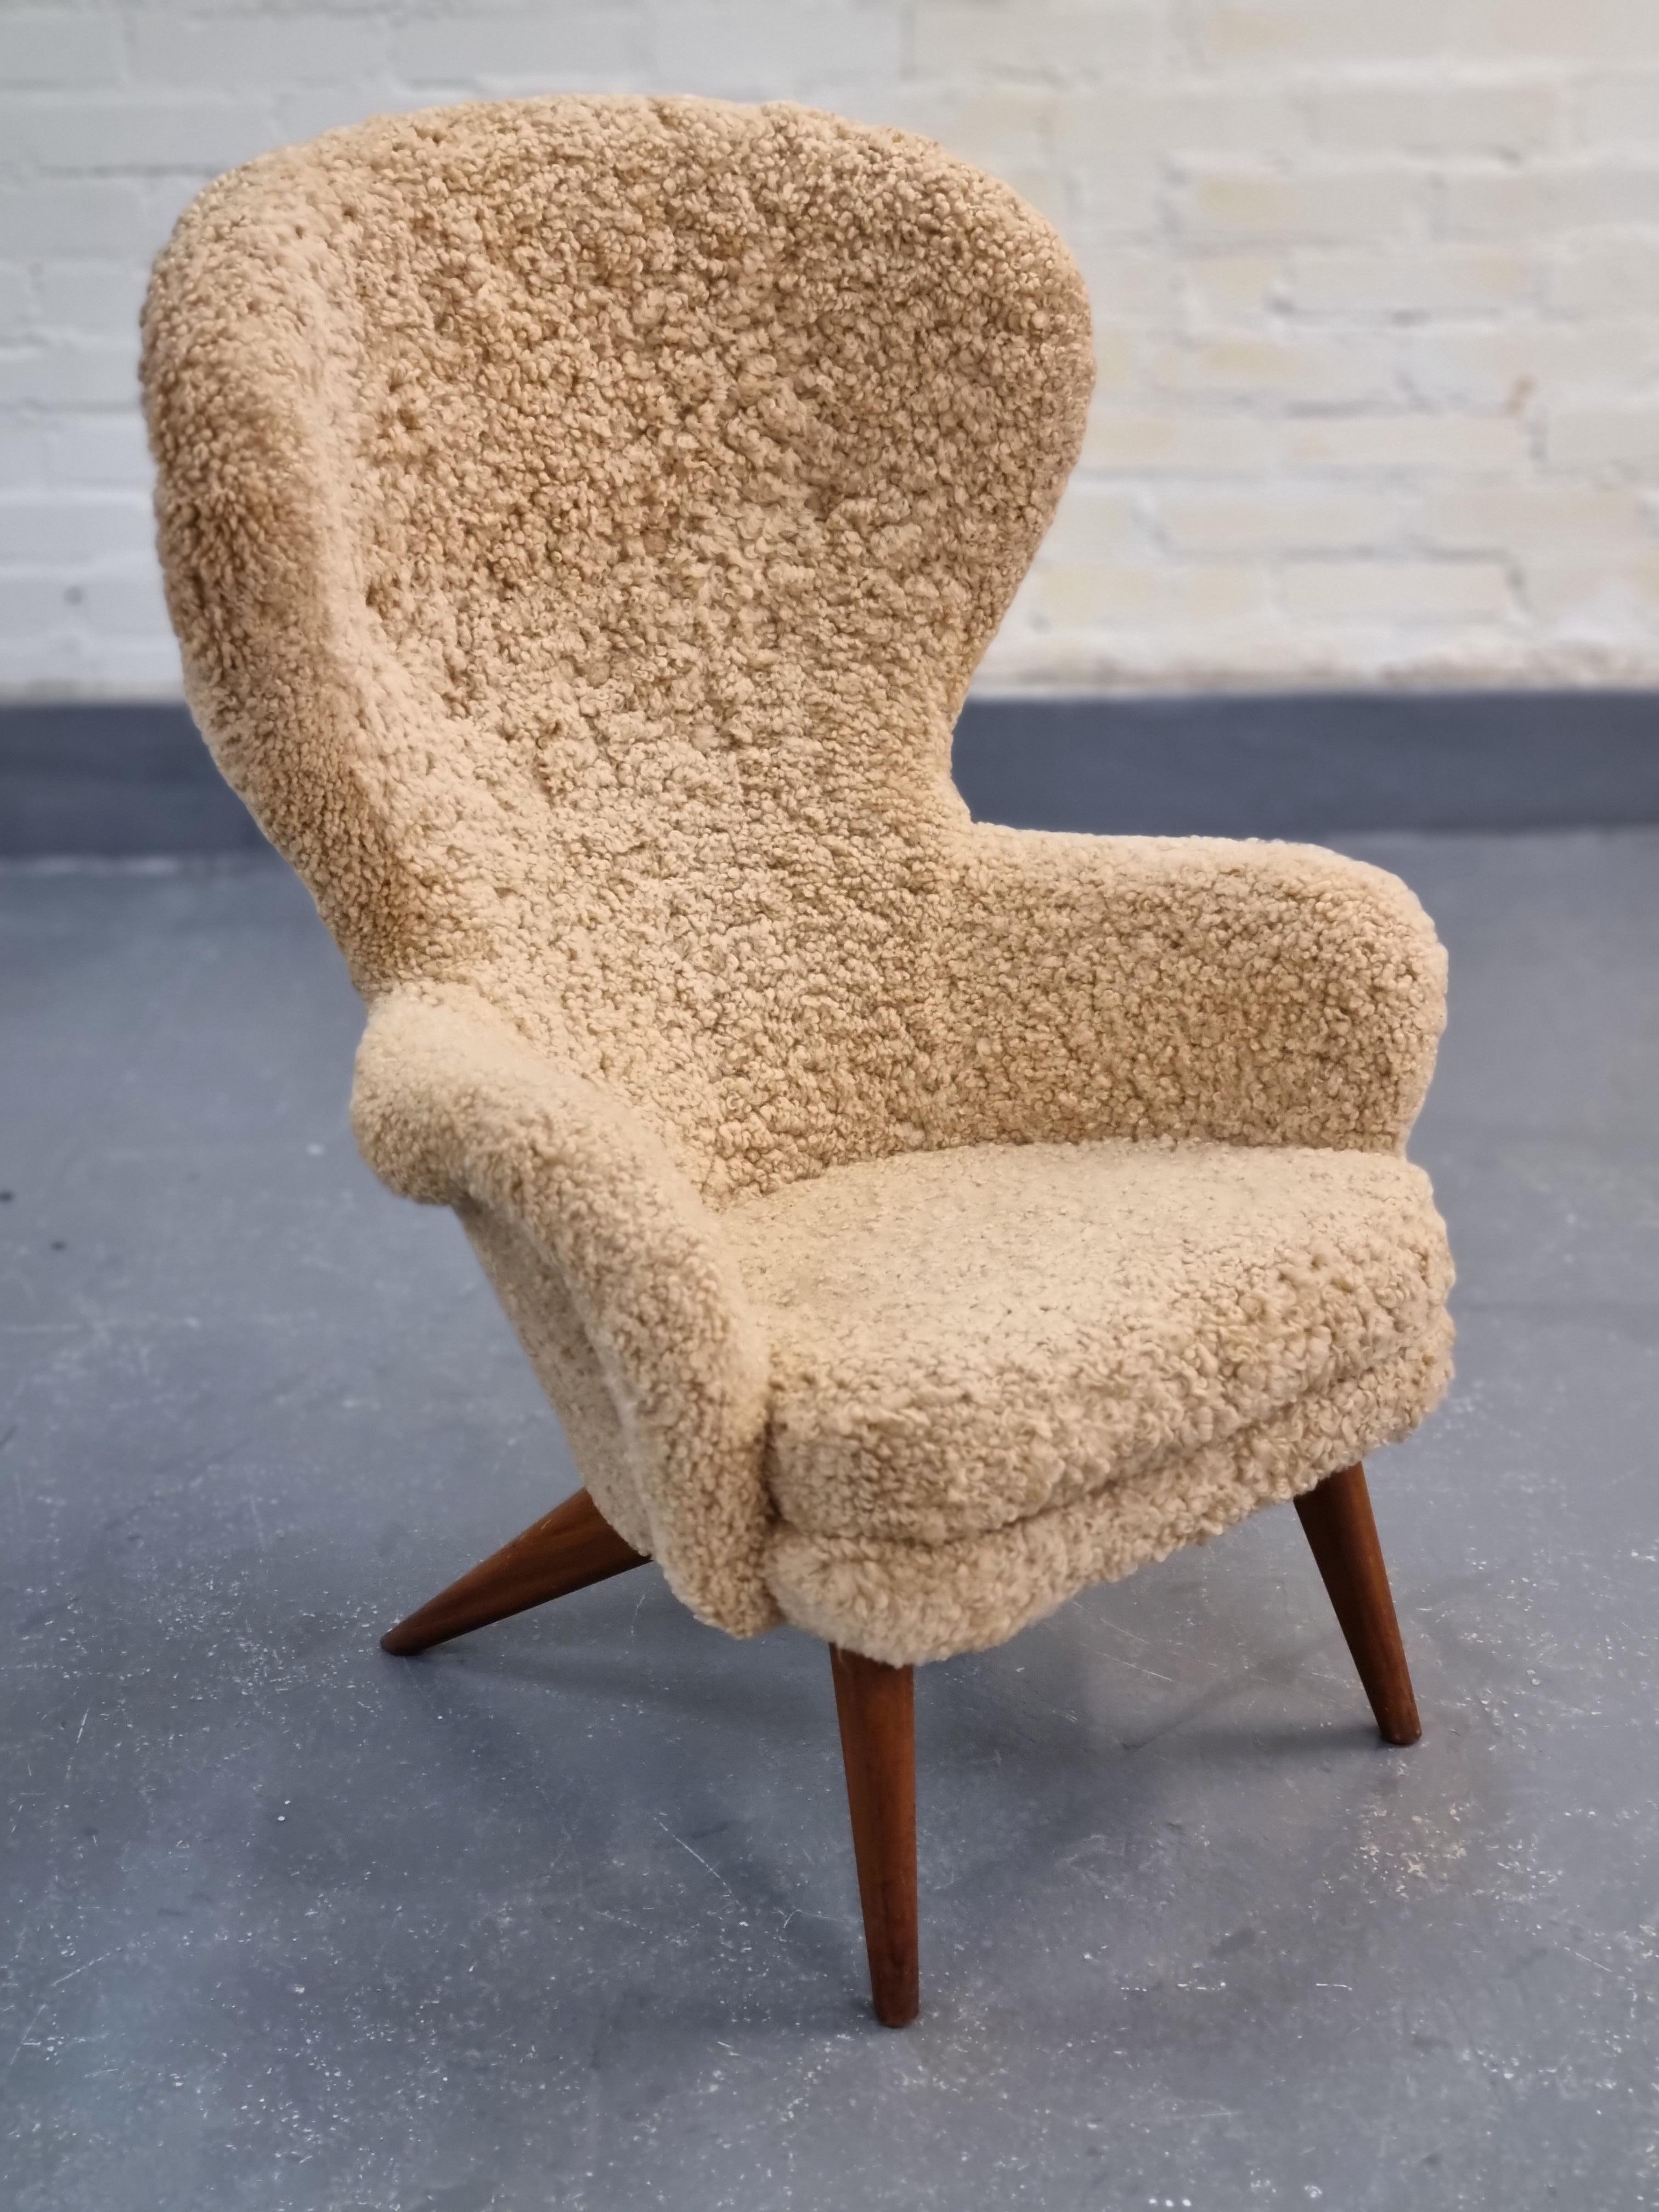 Carl-Gustaf Hiort af Ornäs war als Meister der Formen bekannt. Es heißt, dass er bei seinen Entwürfen immer danach strebte, die Objekte aus allen Blickwinkeln schön zu gestalten, und der Siesta-Sessel ist ein perfektes Beispiel dafür. 

Der Stuhl